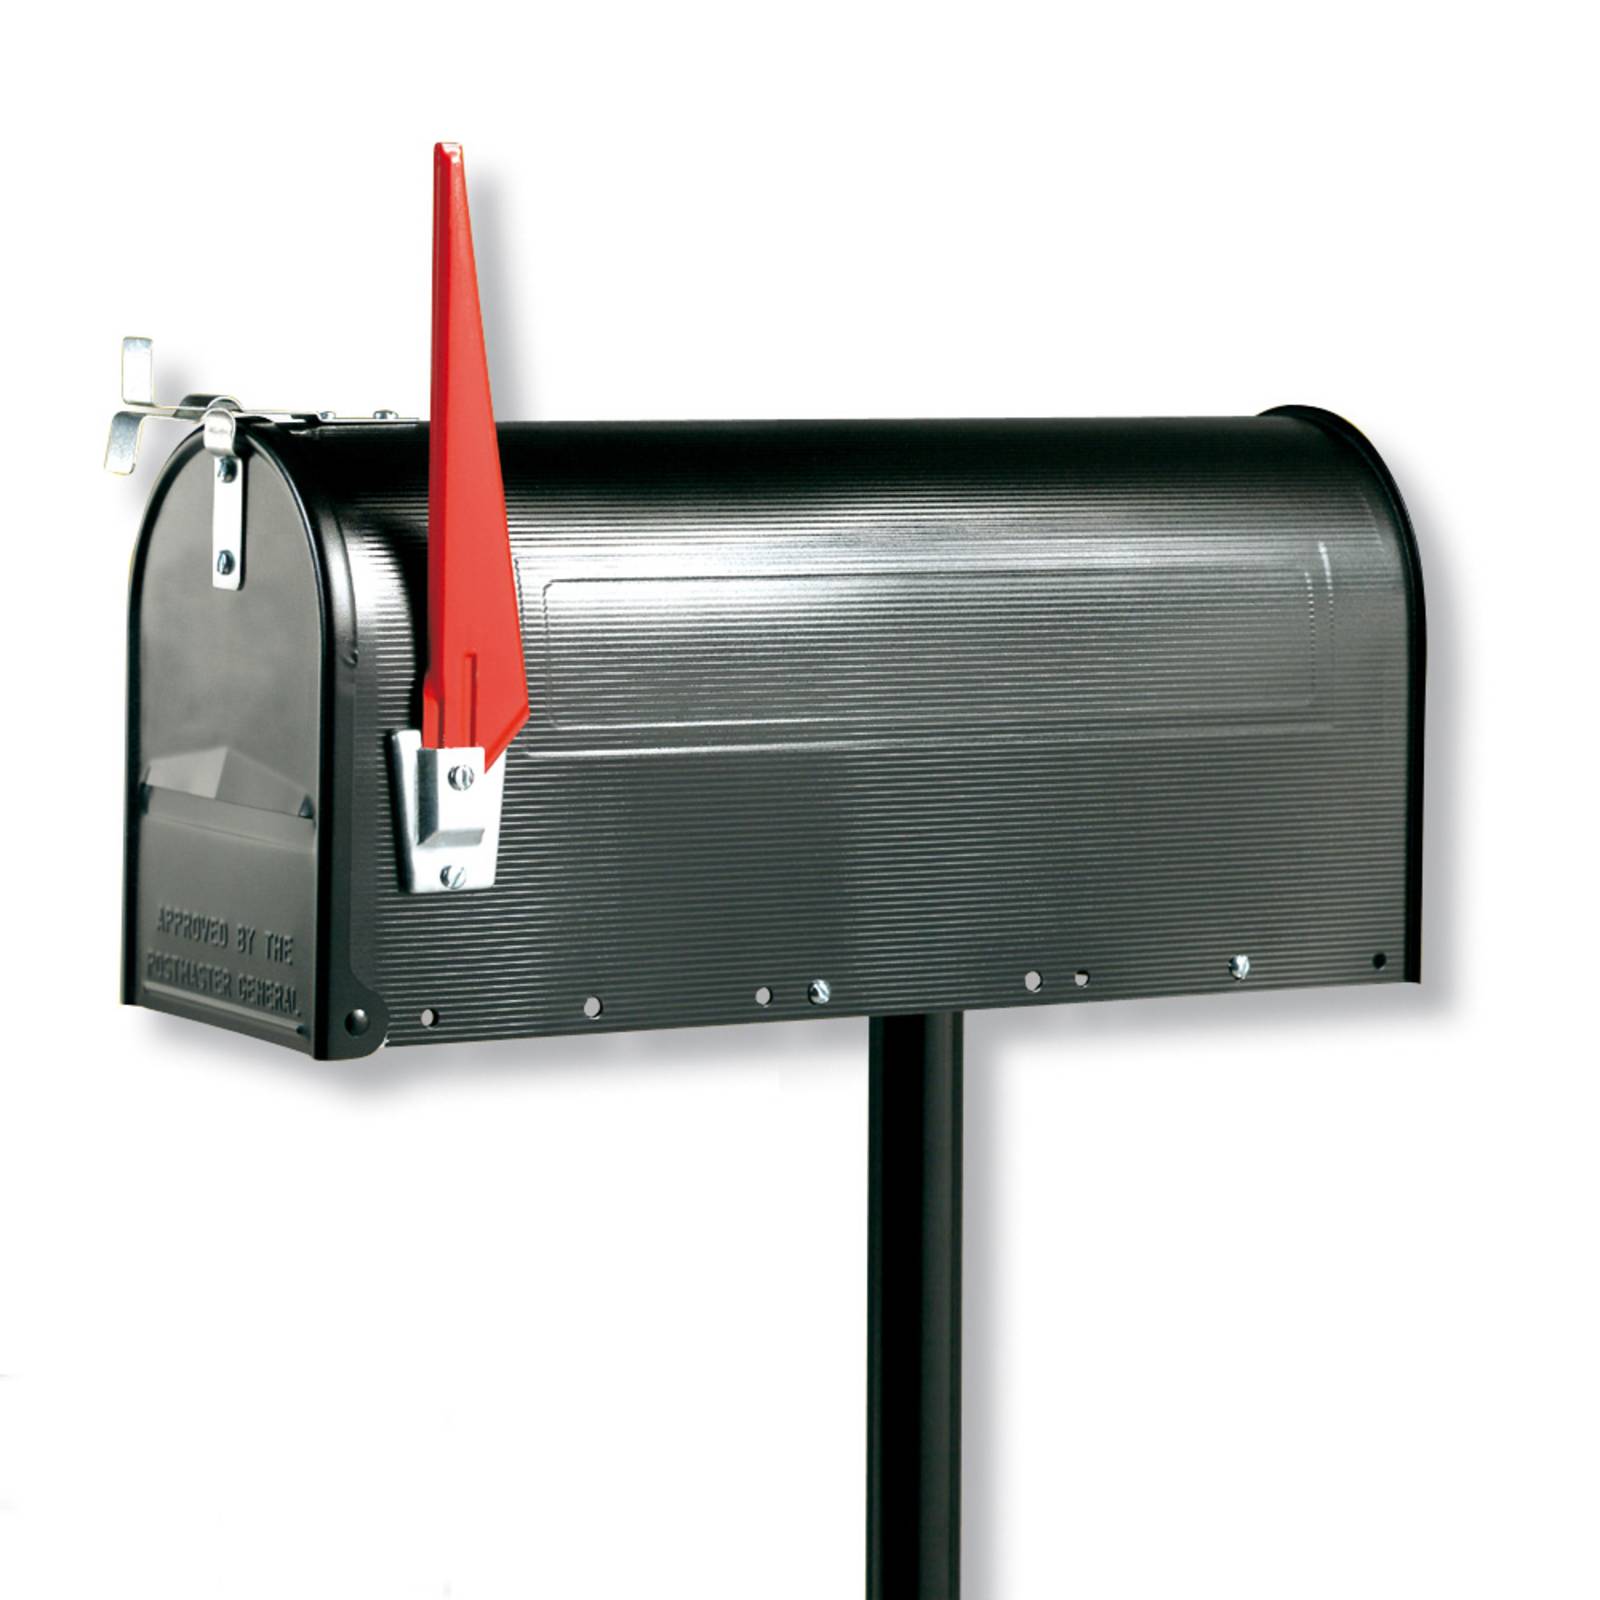 Burgwächter U.S. Mailbox mit schwenkbarer Fahne, schwarz